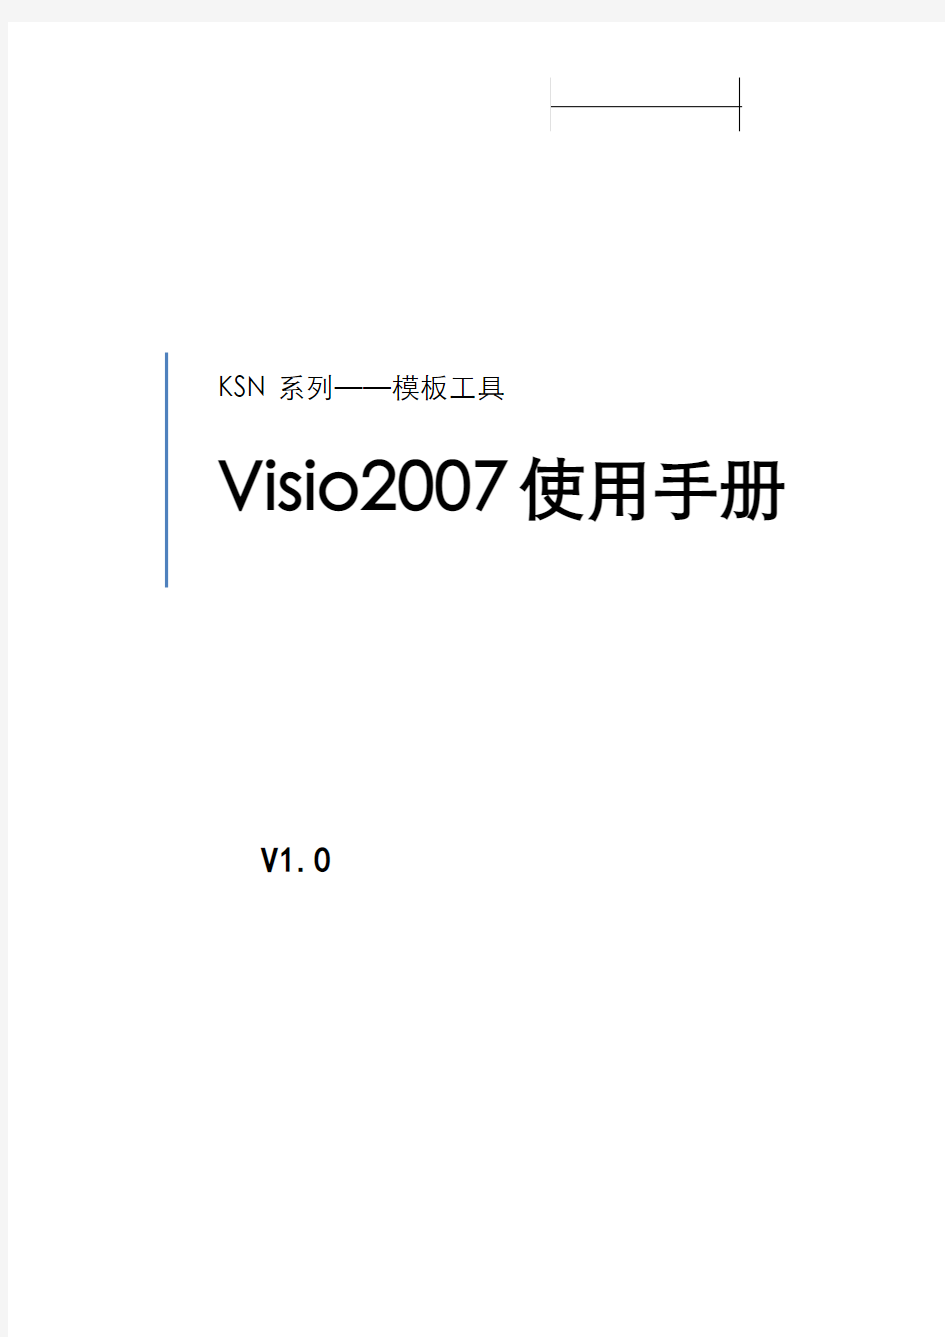 visio2007使用手册-V1.0